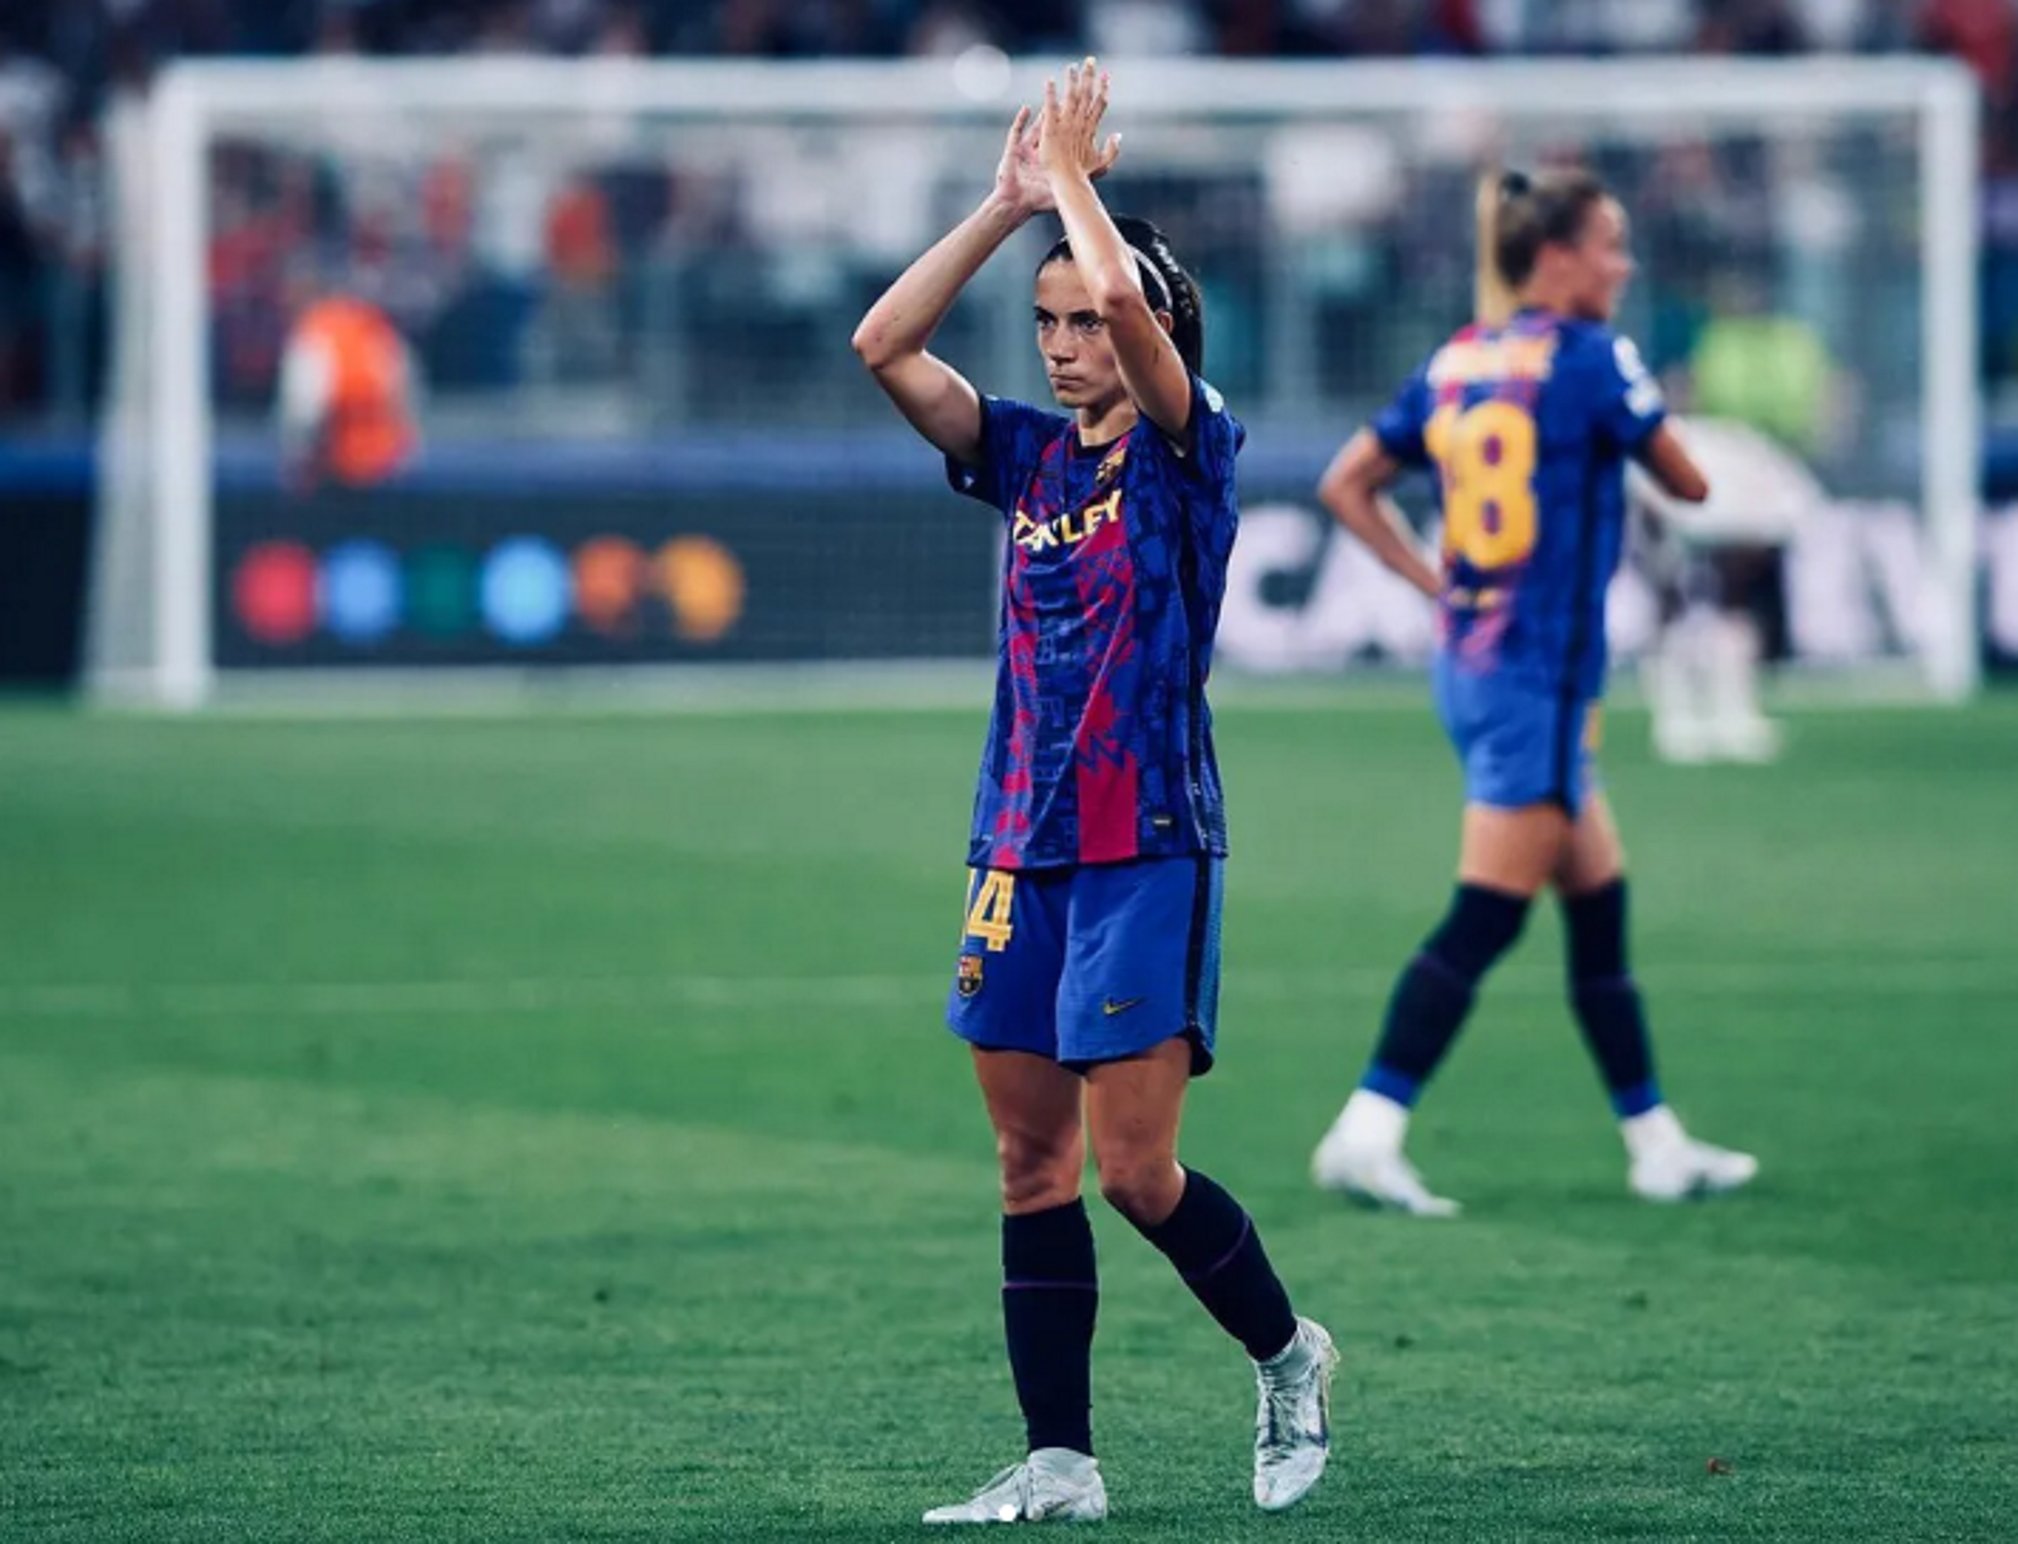 El gest d'Aitana Bonmatí que enamora en la nit més amarga del Barça femení